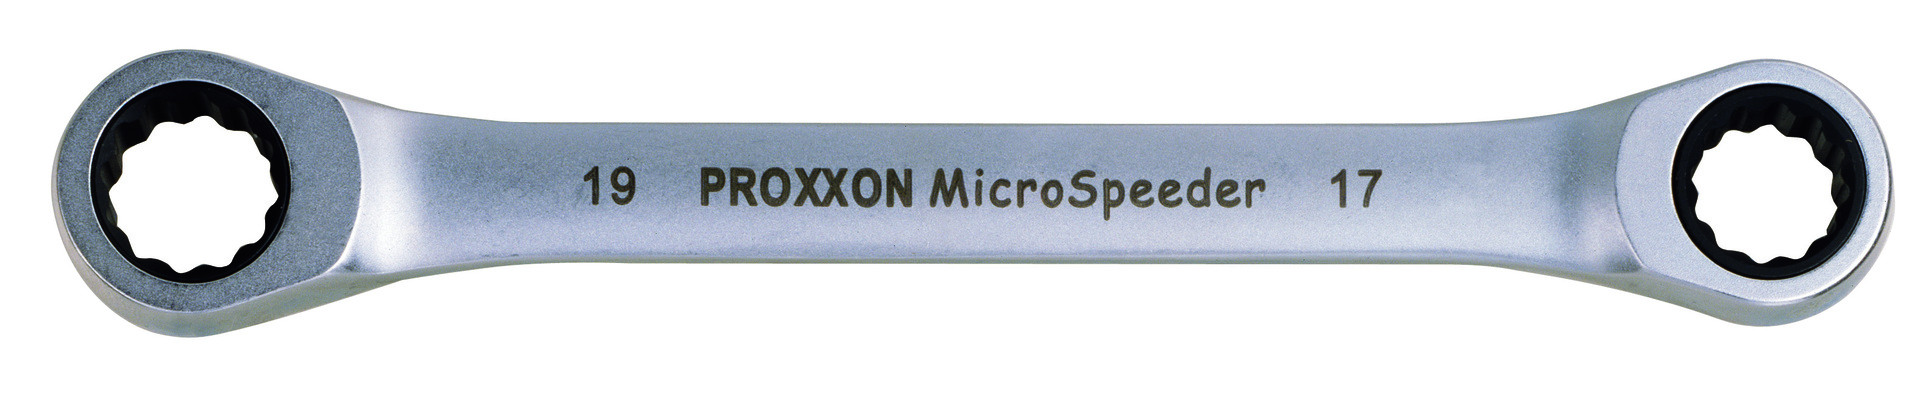 Micro-Speeder Ratschenschlüssel 10x11mm